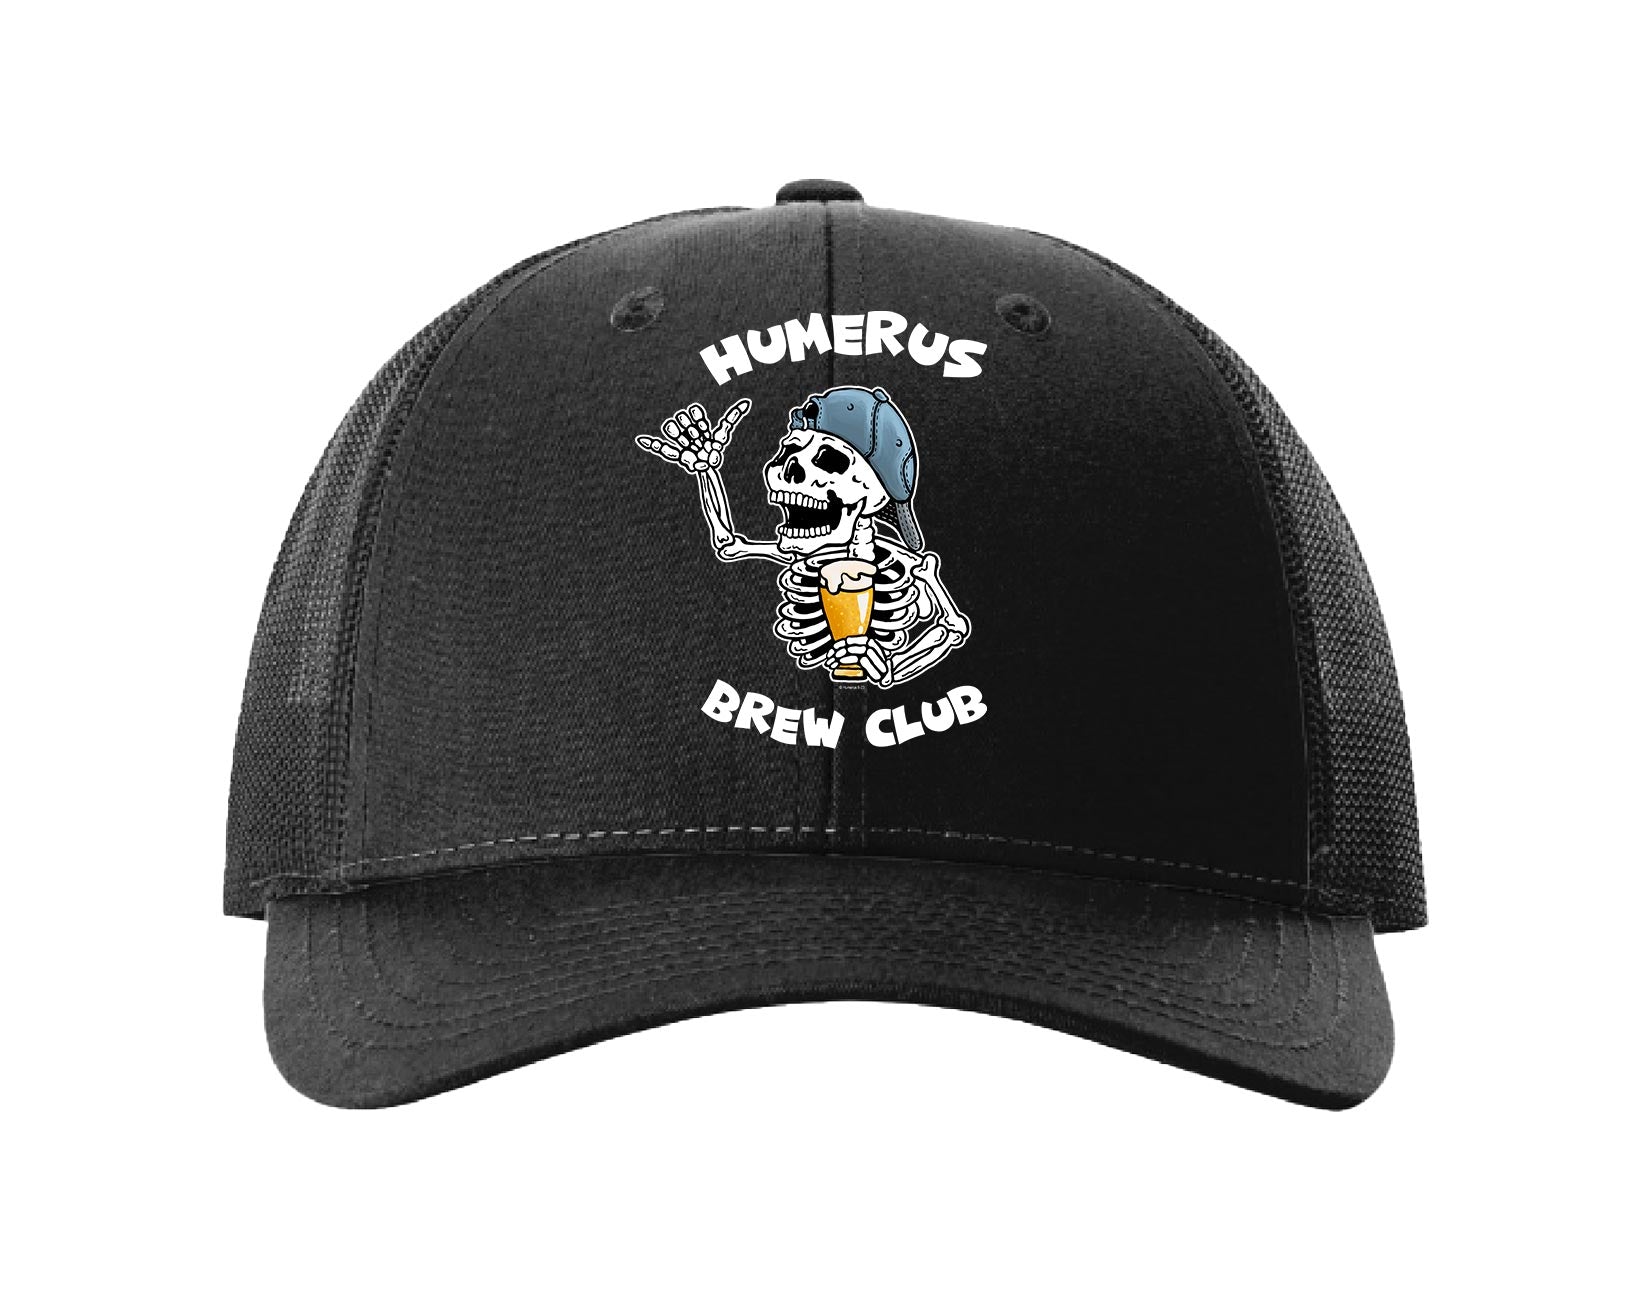 Humerus Brew Club - Low Profile Trucker Hat